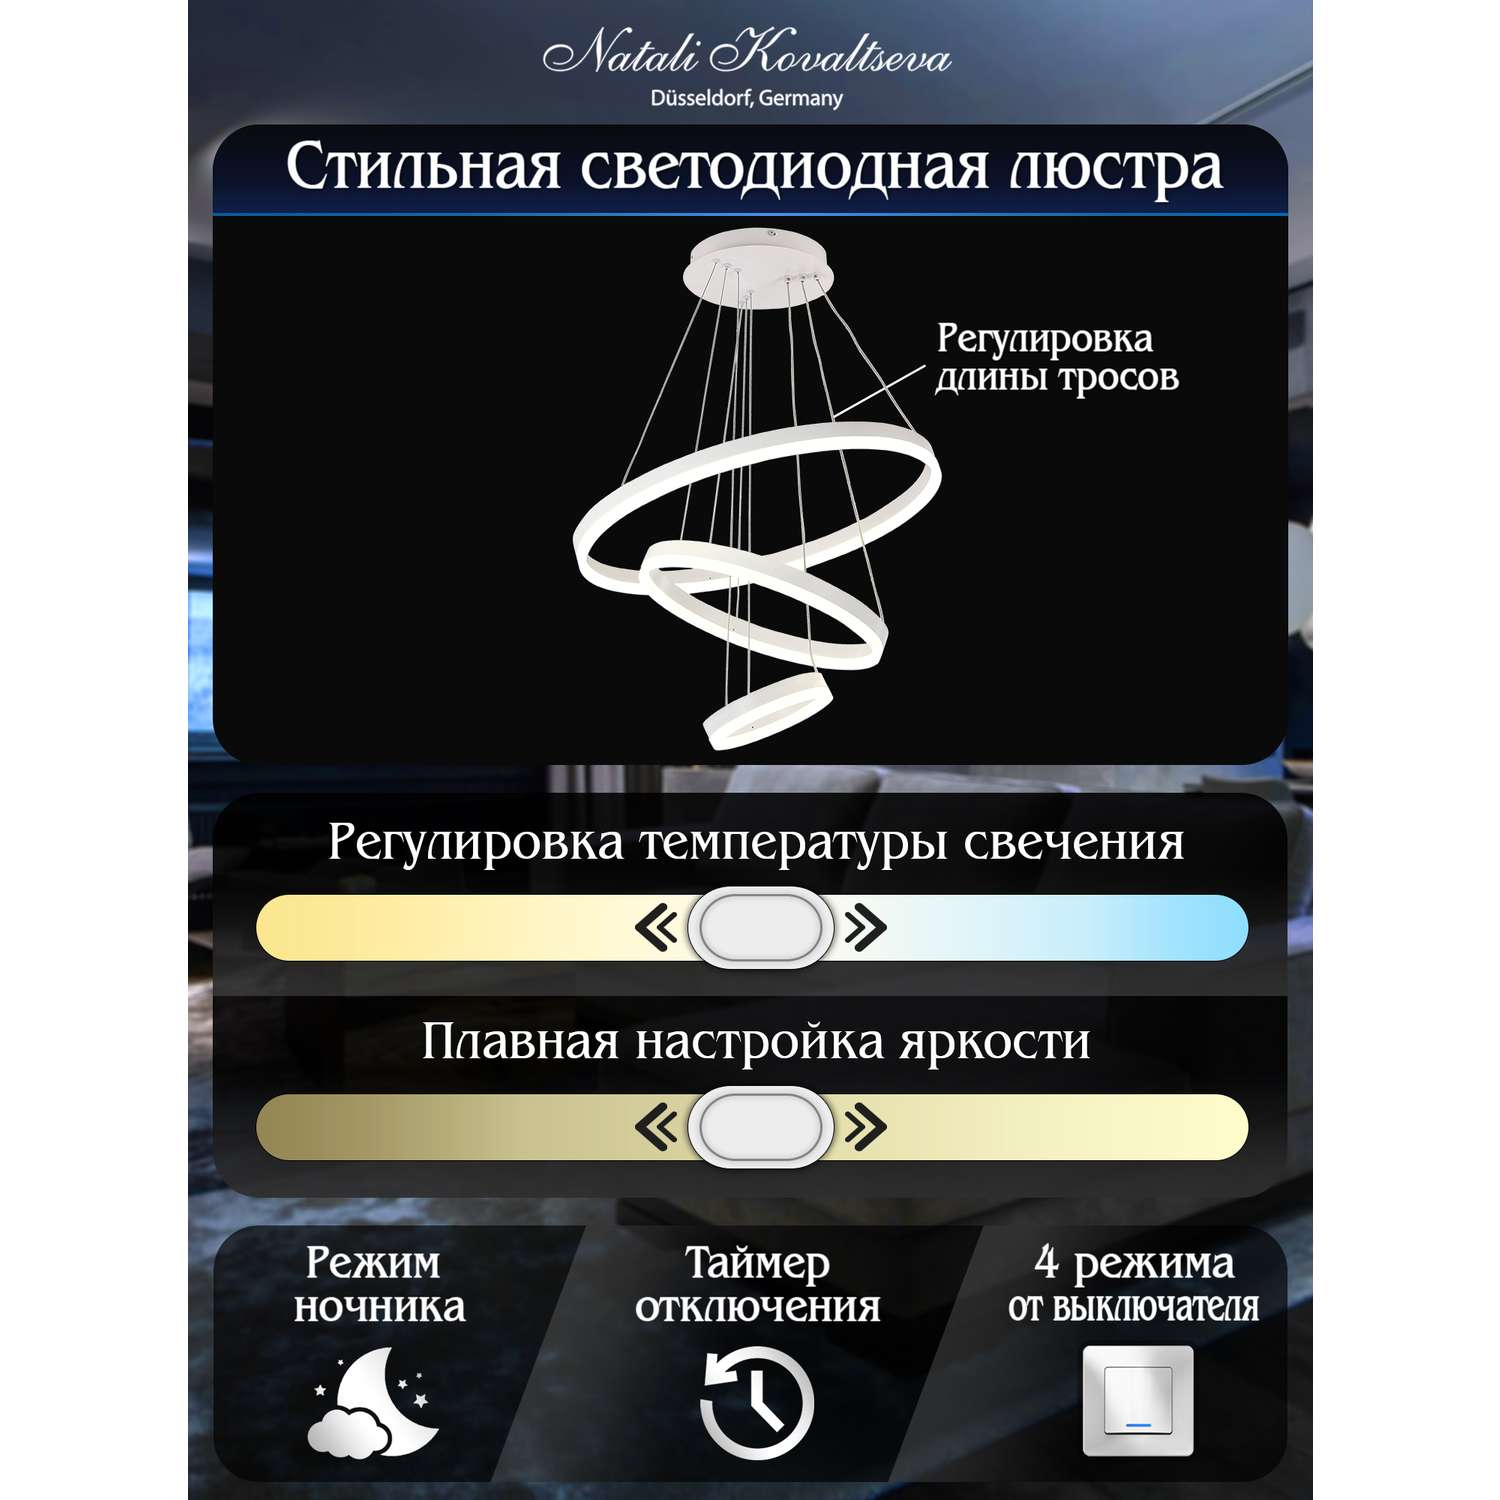 Светодиодный светильник NATALI KOVALTSEVA люстра тройной нимб 160W белый LED - фото 3